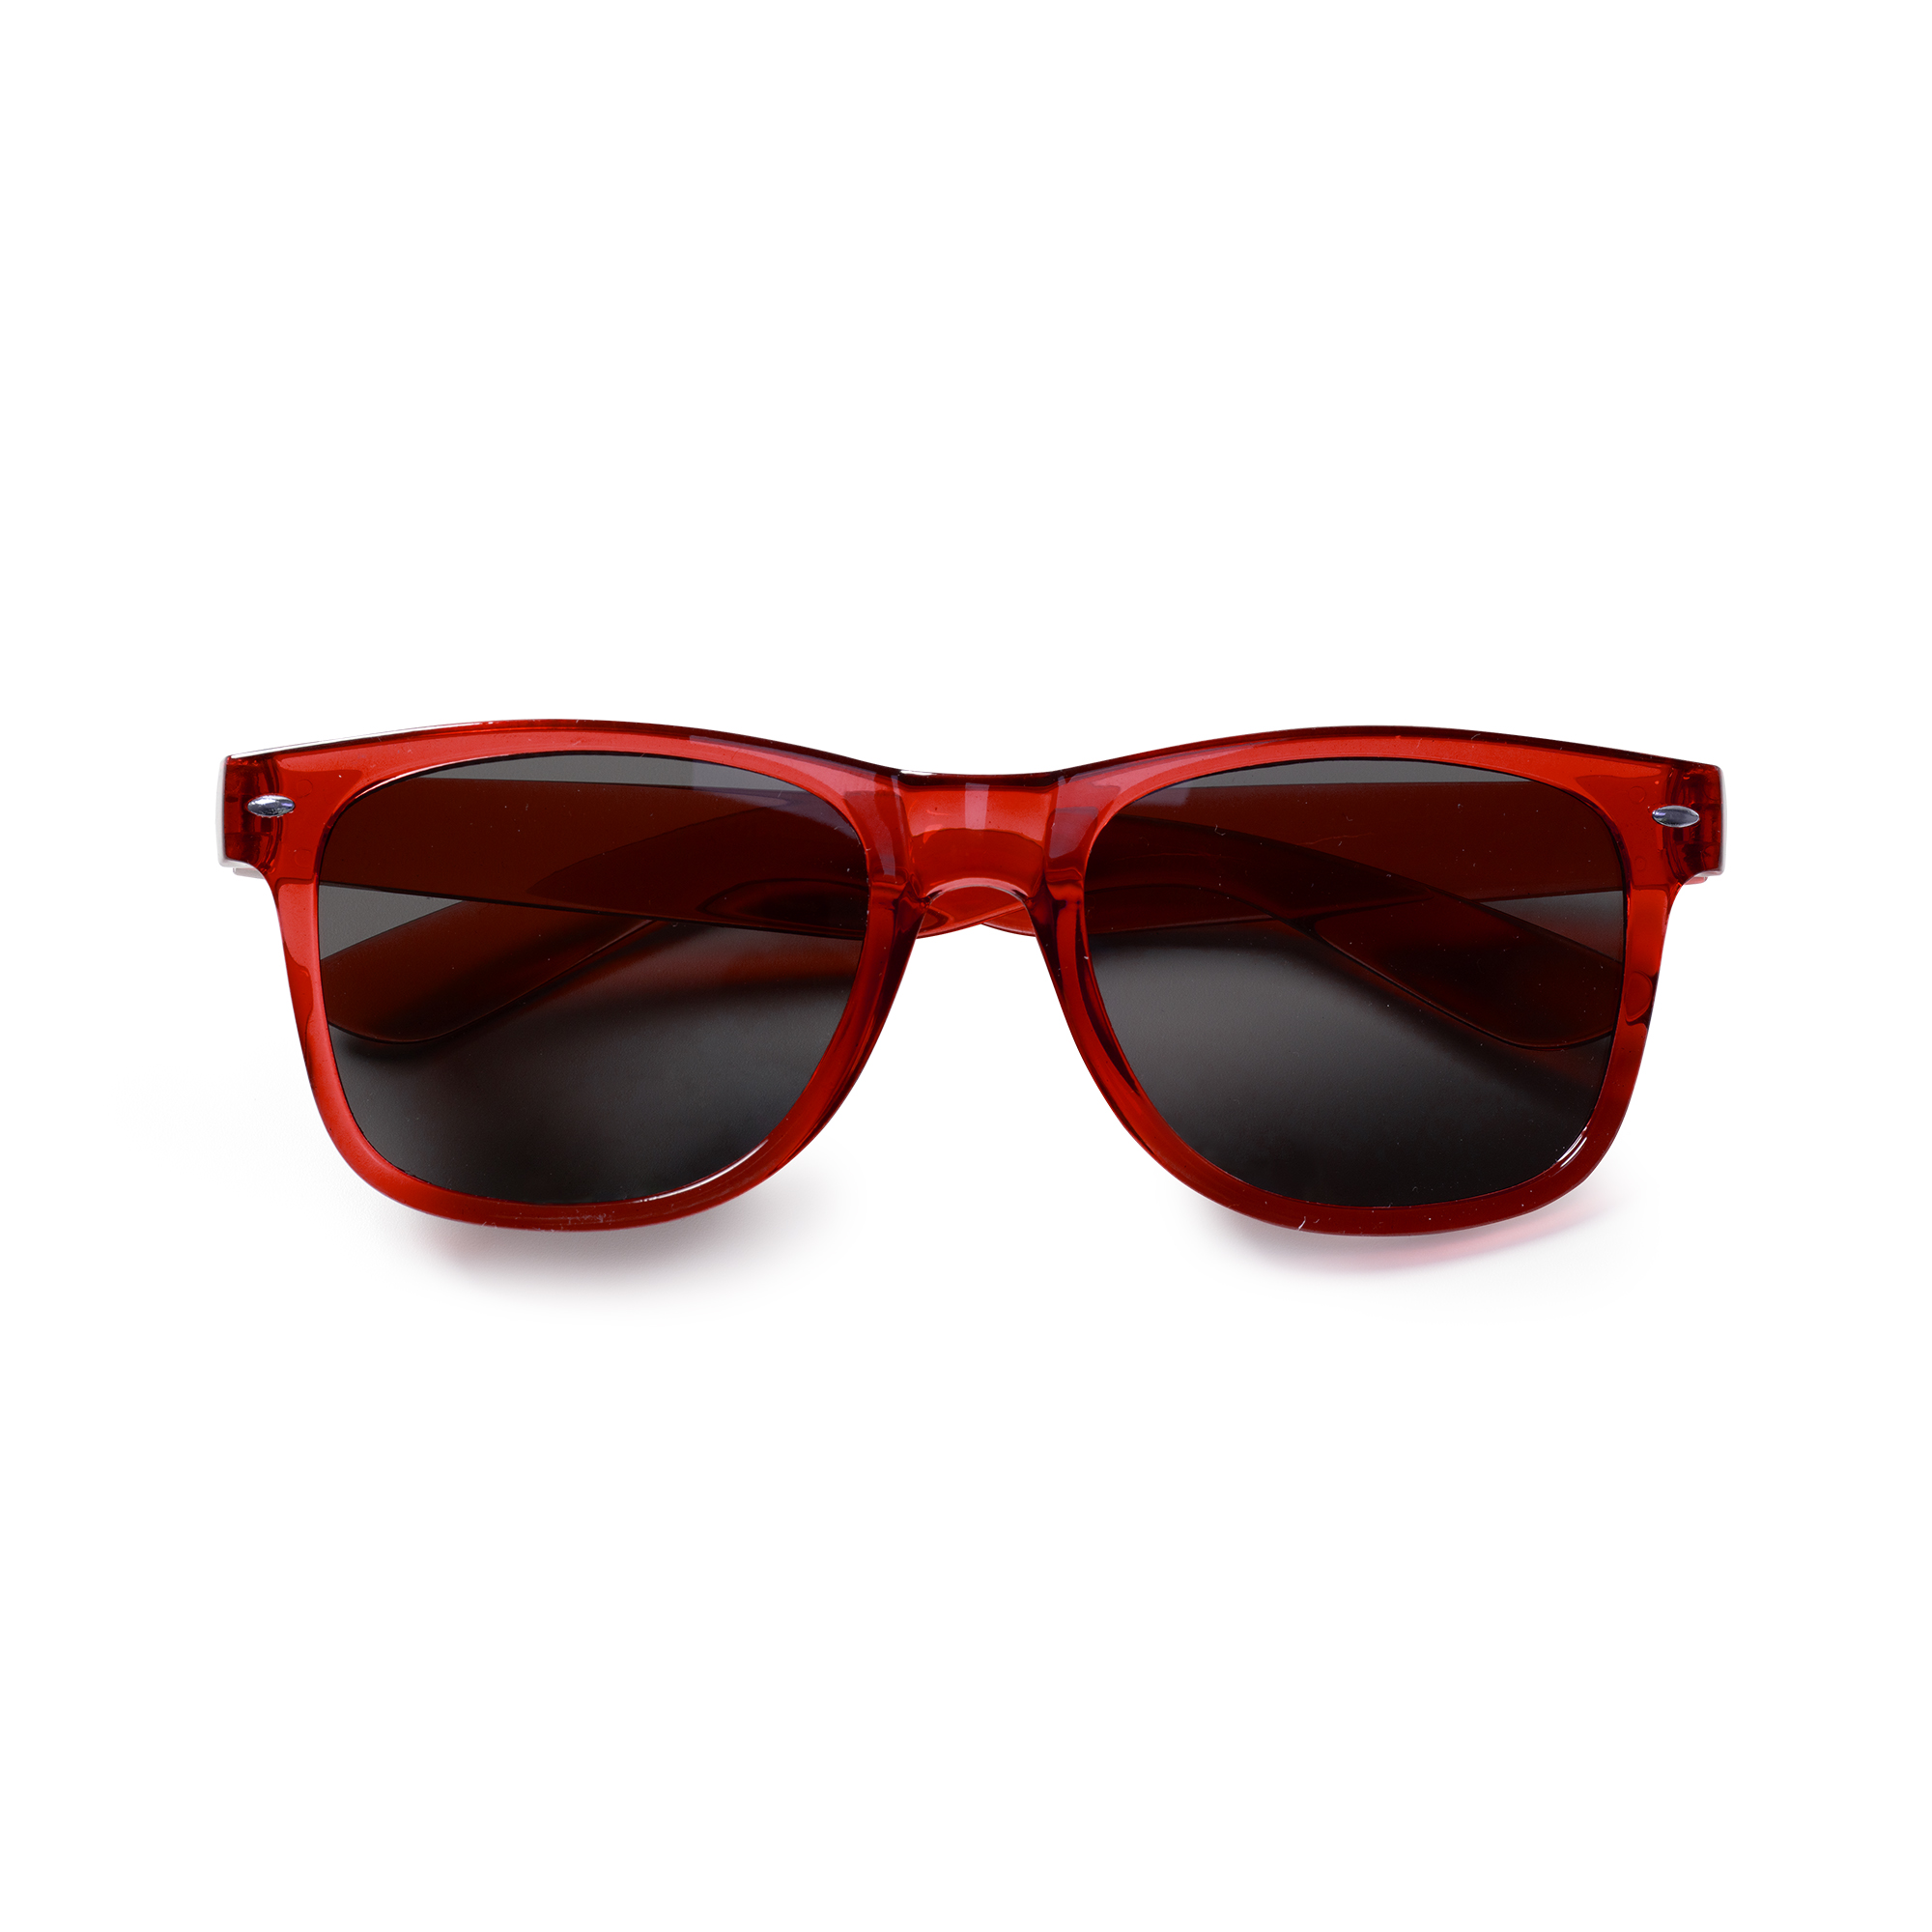 6007-pier-occhiali-da-sole-rosso.jpg